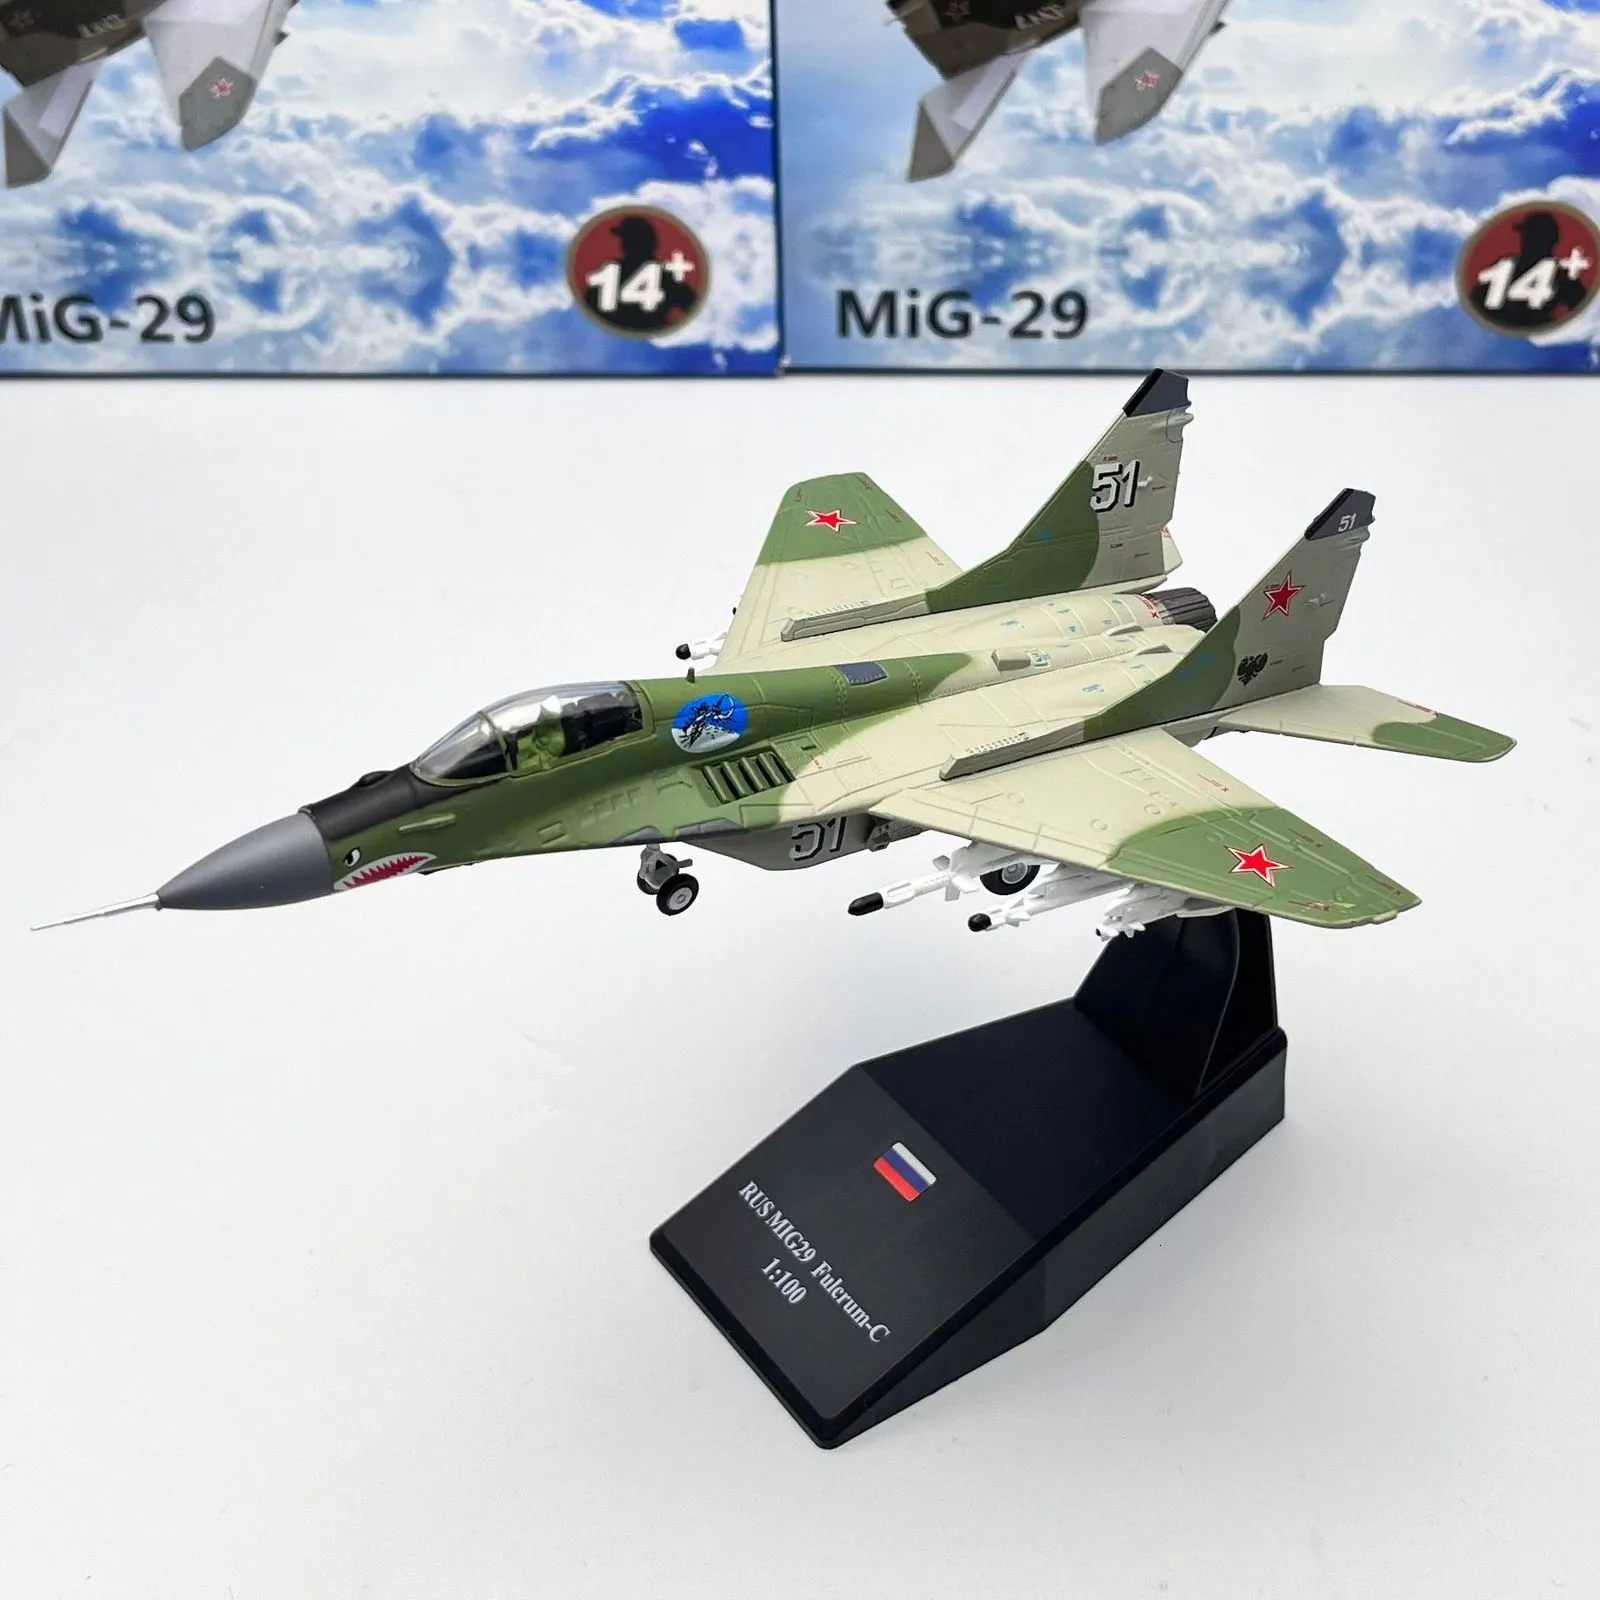 Modèle d'avion échelle 1/100 modèle de chasse US MIG-29 Fulcrum réplique d'avion militaire aviation avion de la guerre mondiale jouet miniature de collection pour garçon 230915